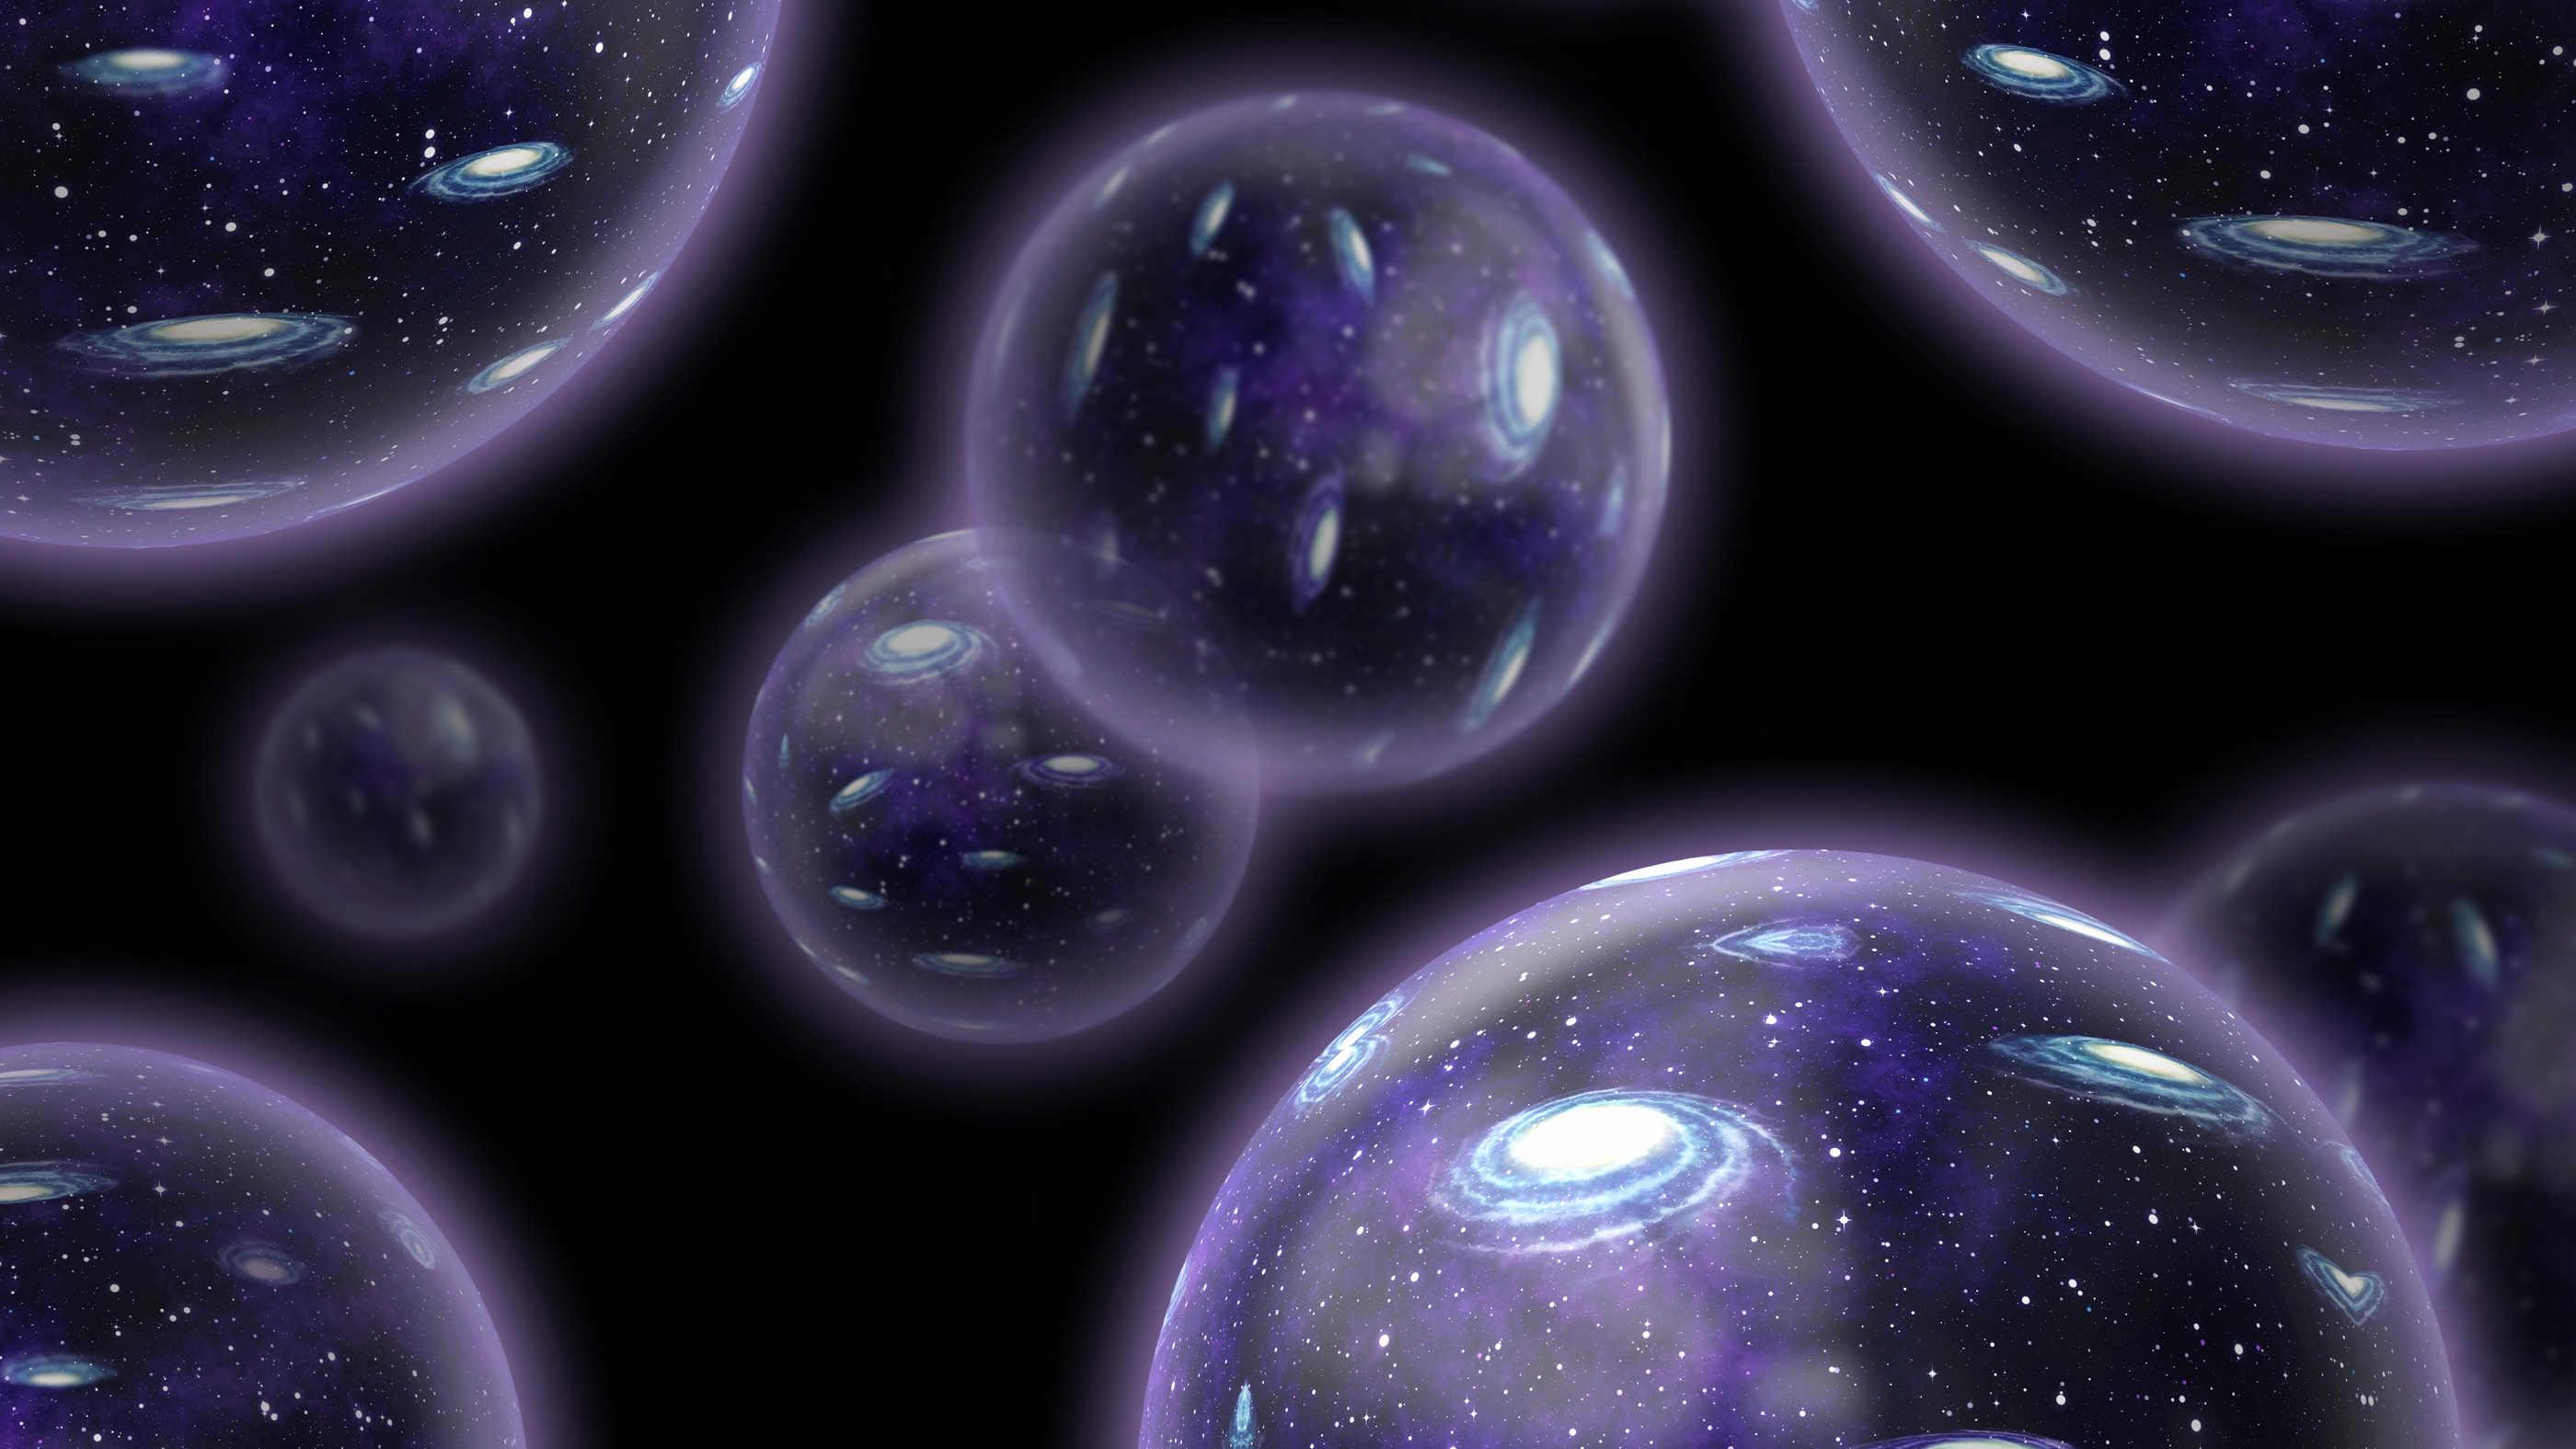 Universo burbuja, multiverso mostrado en la concepción de este artista.